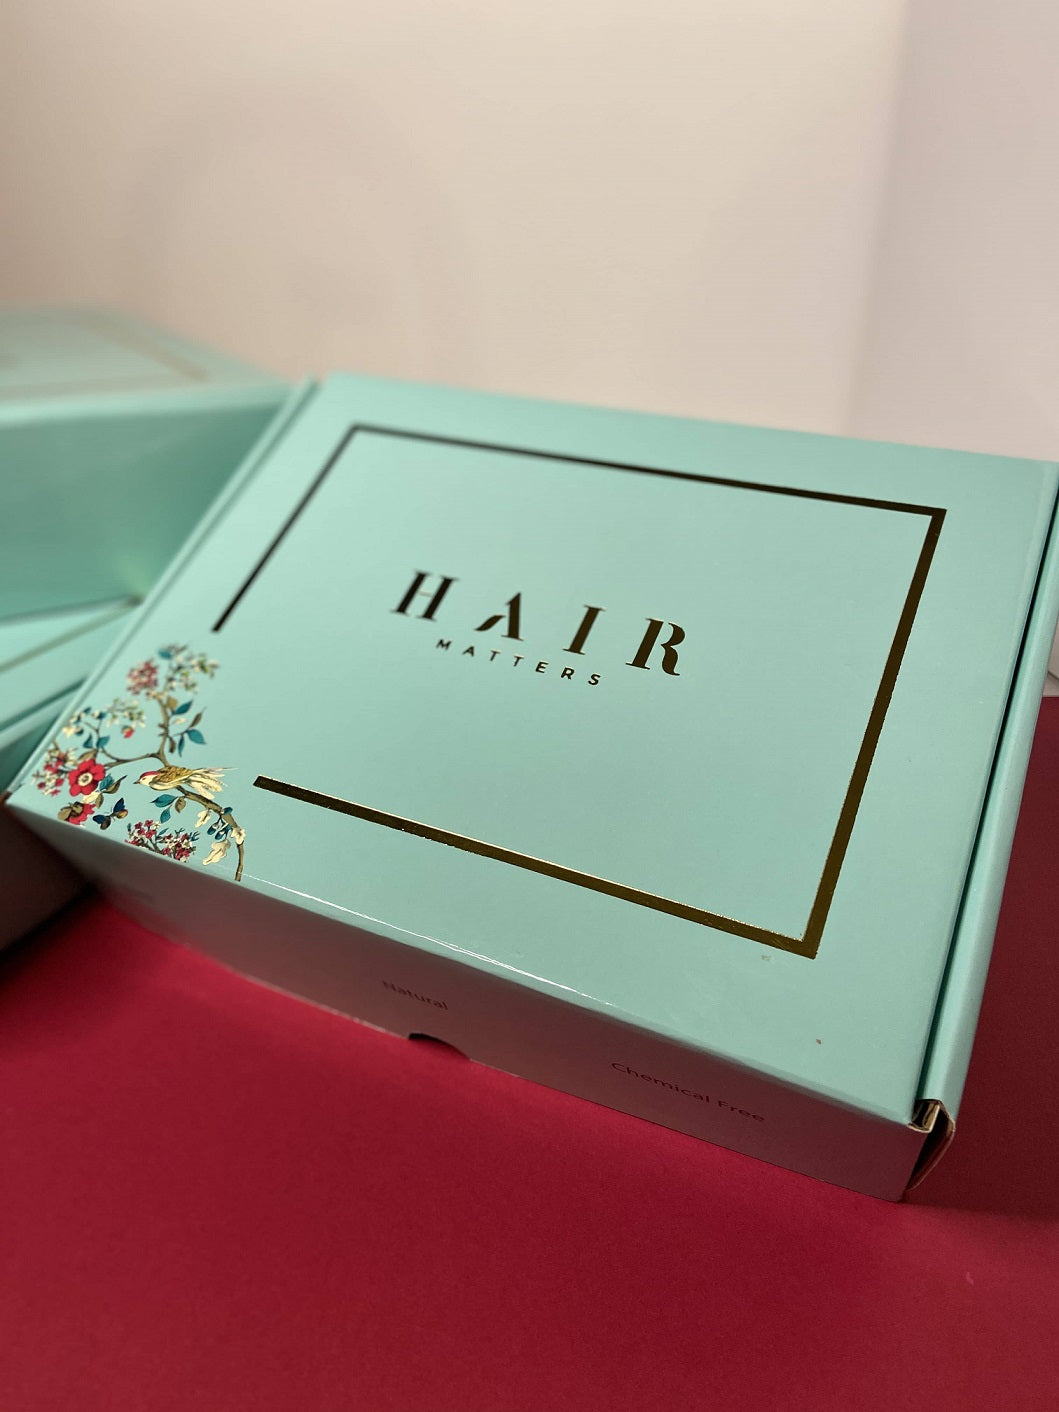 Hair Oil Gift Box